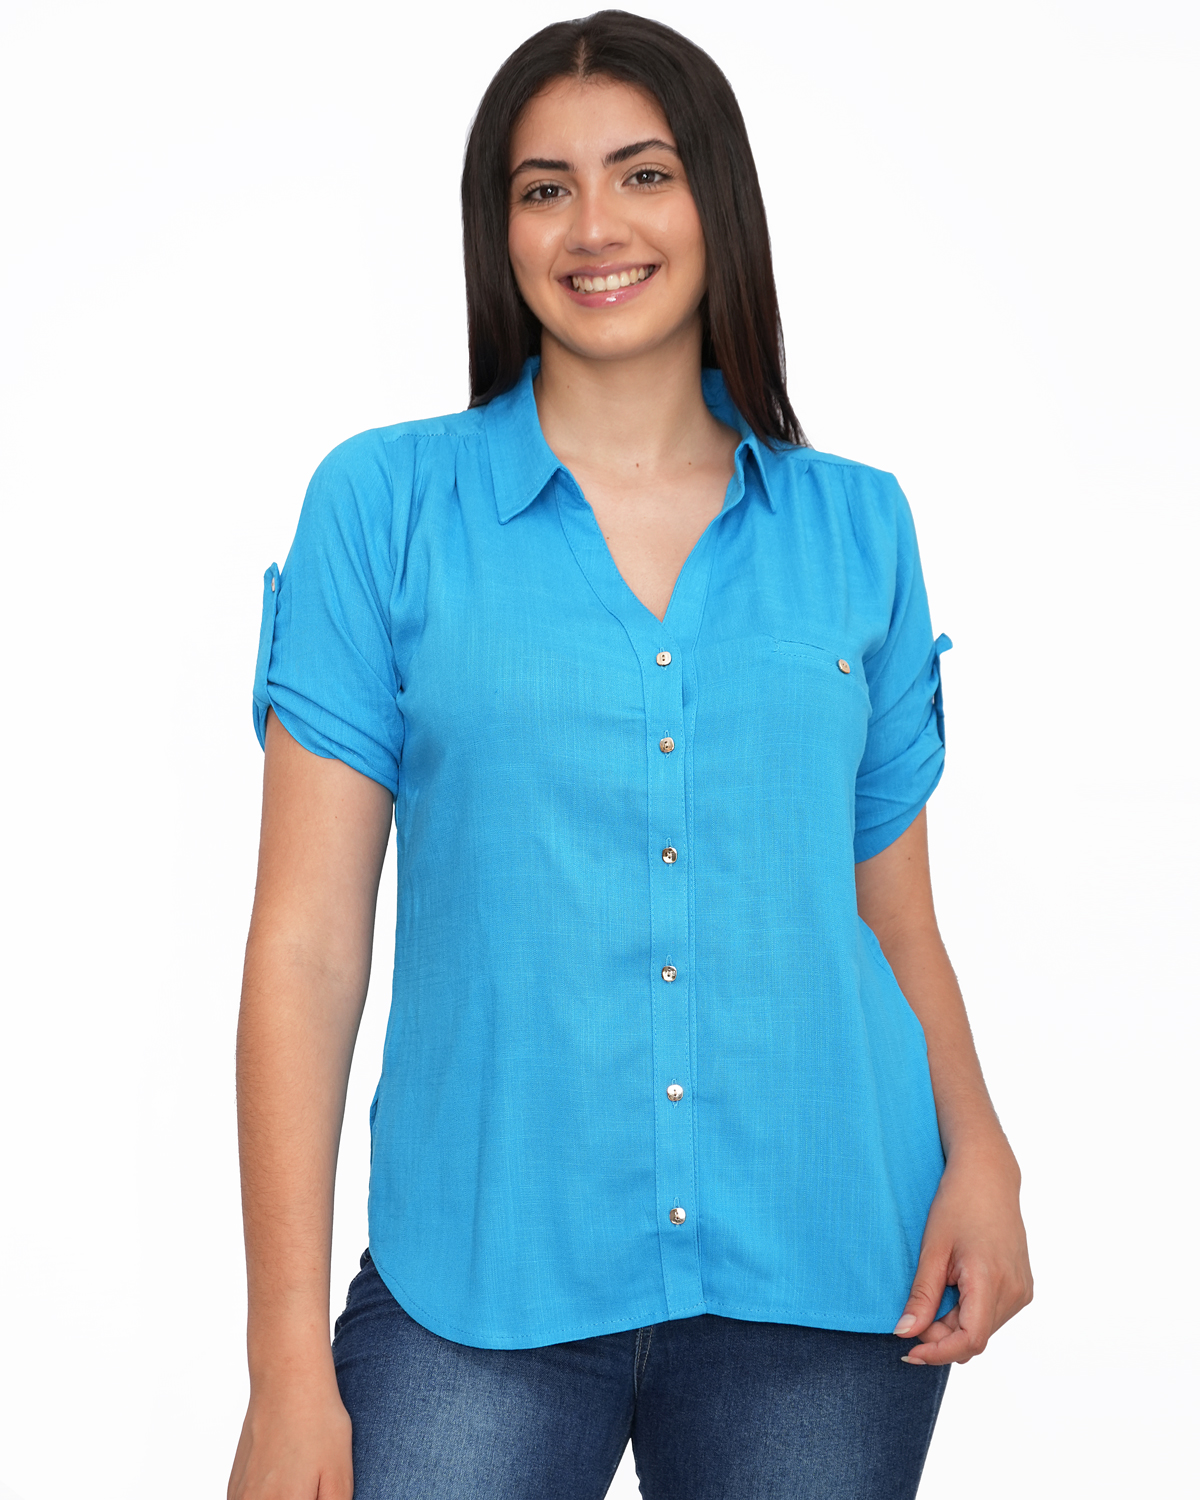 Blusa para Dama - Cuello Camisa -Botones - Gamarra - Ropa en Perú